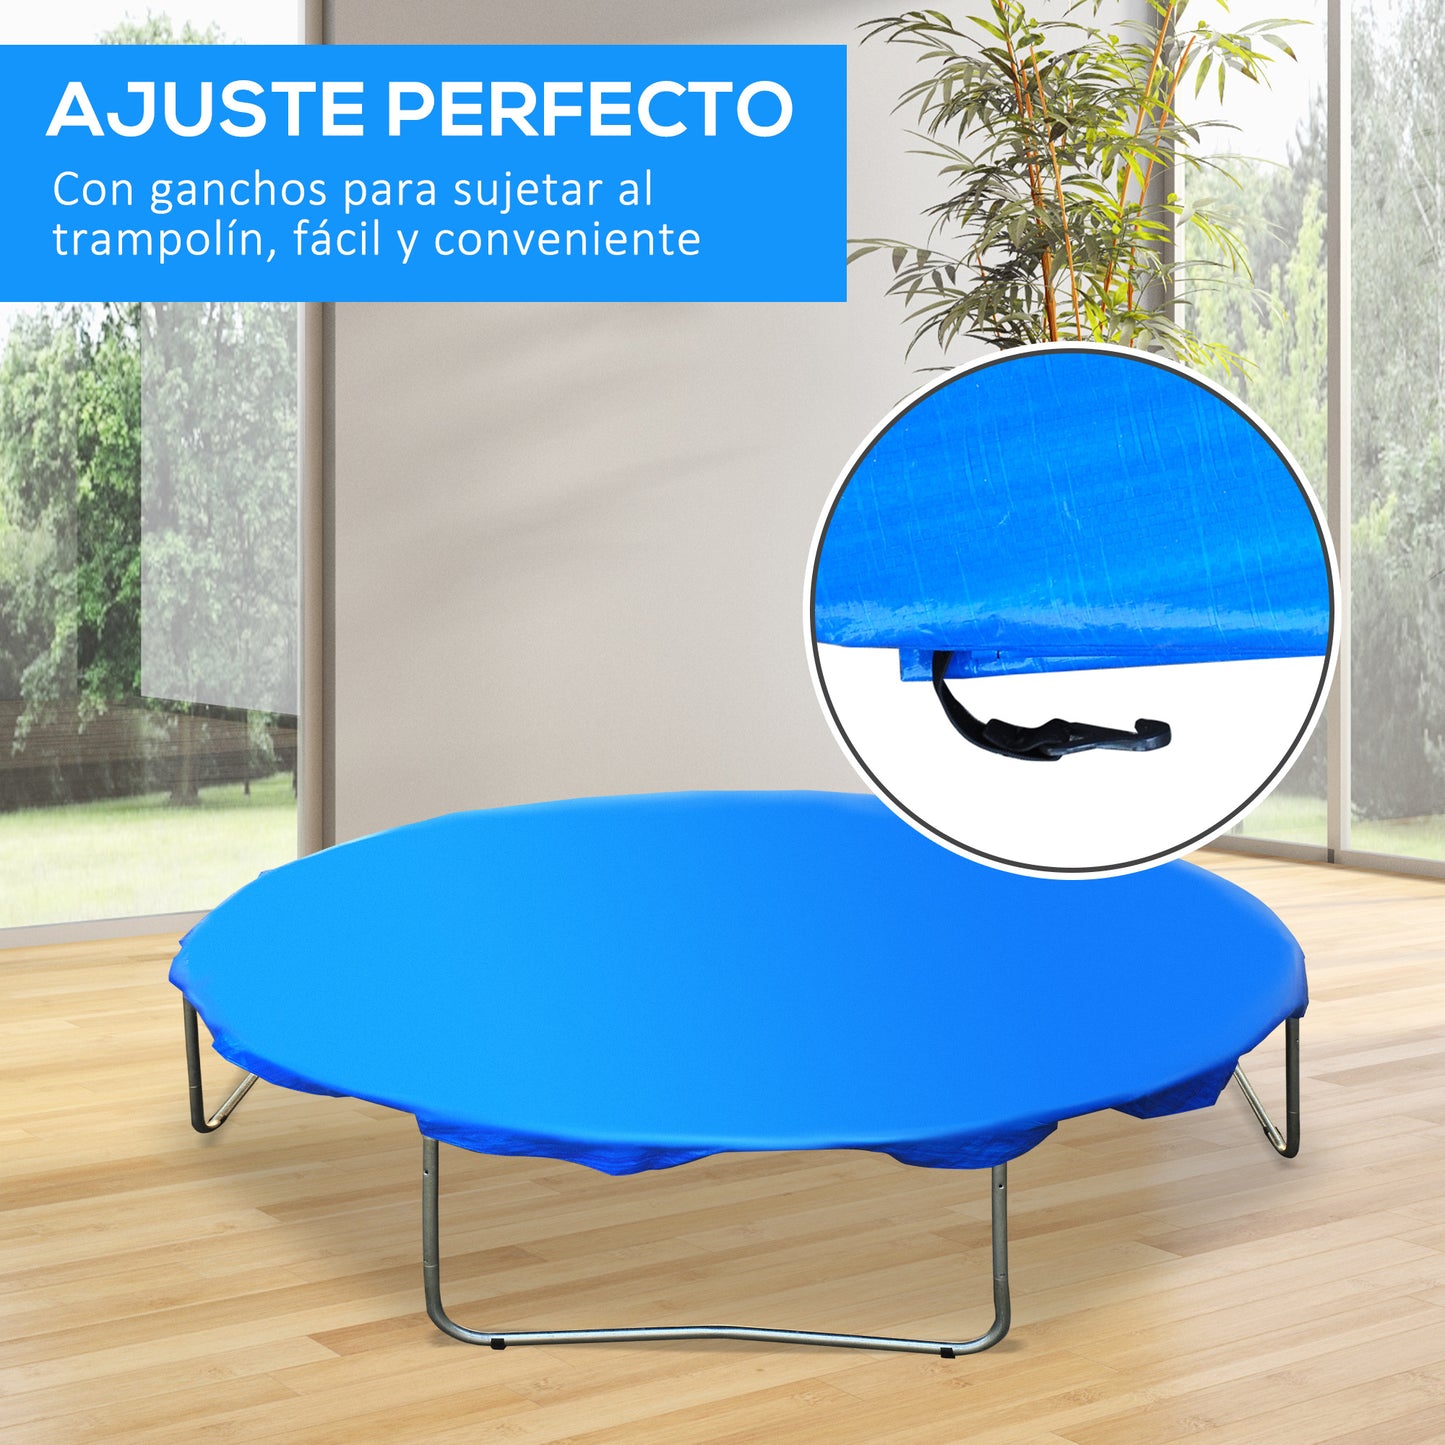 Homcom - Funda proteccion impermeable para cama elástica trampolines, diámetro ø 366cm, color azul